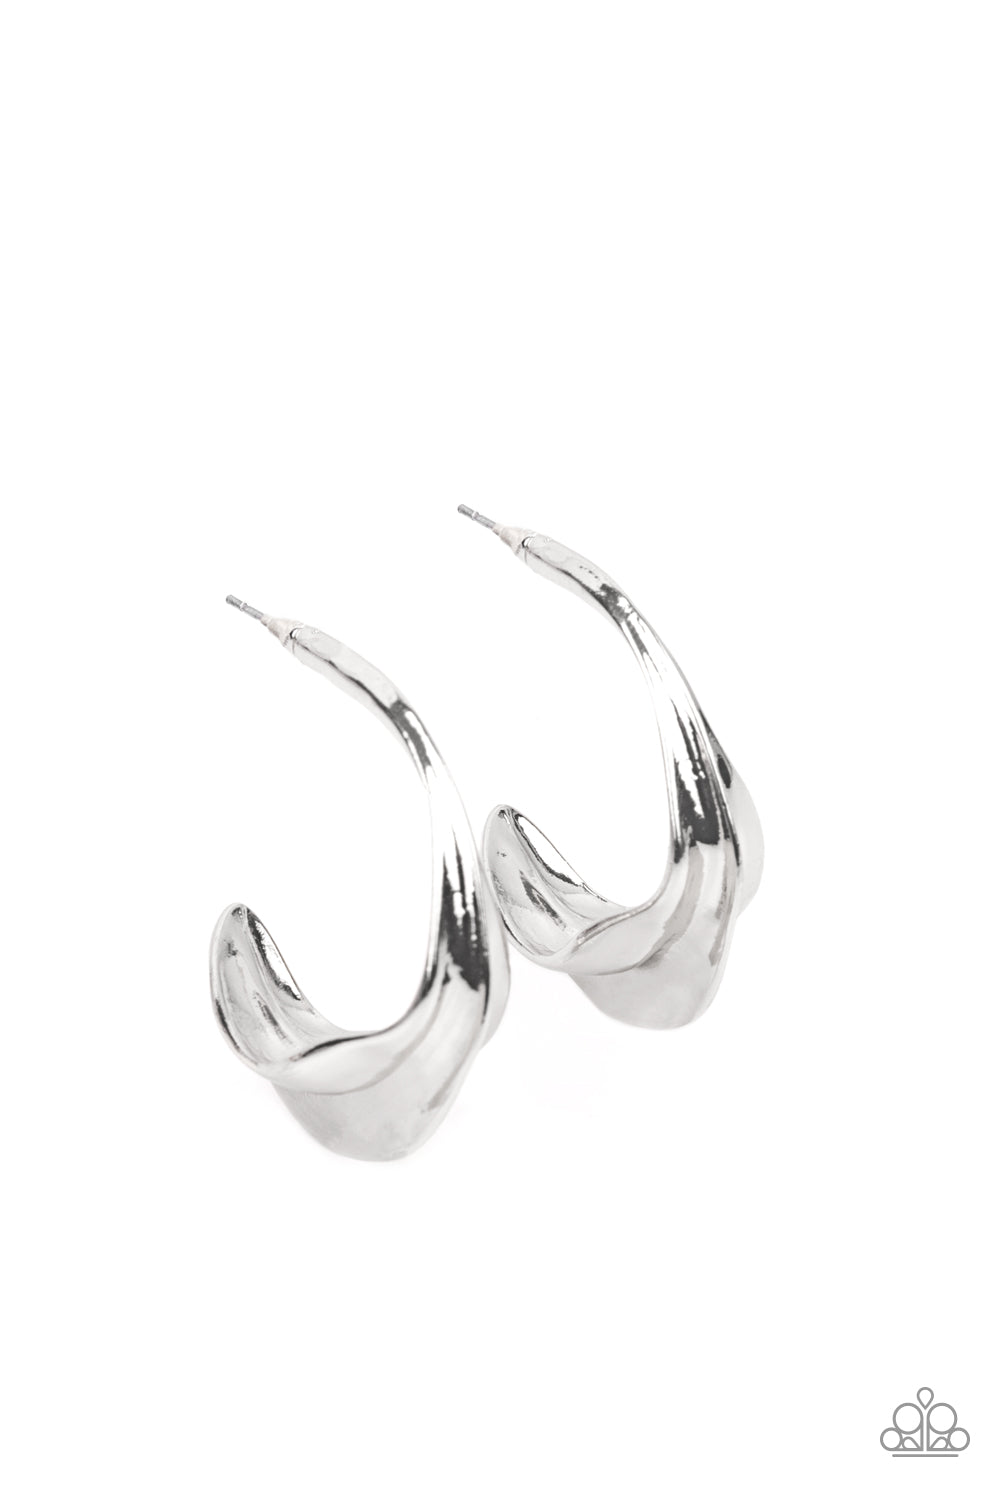 Paparazzi Modern Meltdown - Silver Hoop Earrings - A Finishing Touch Jewelry